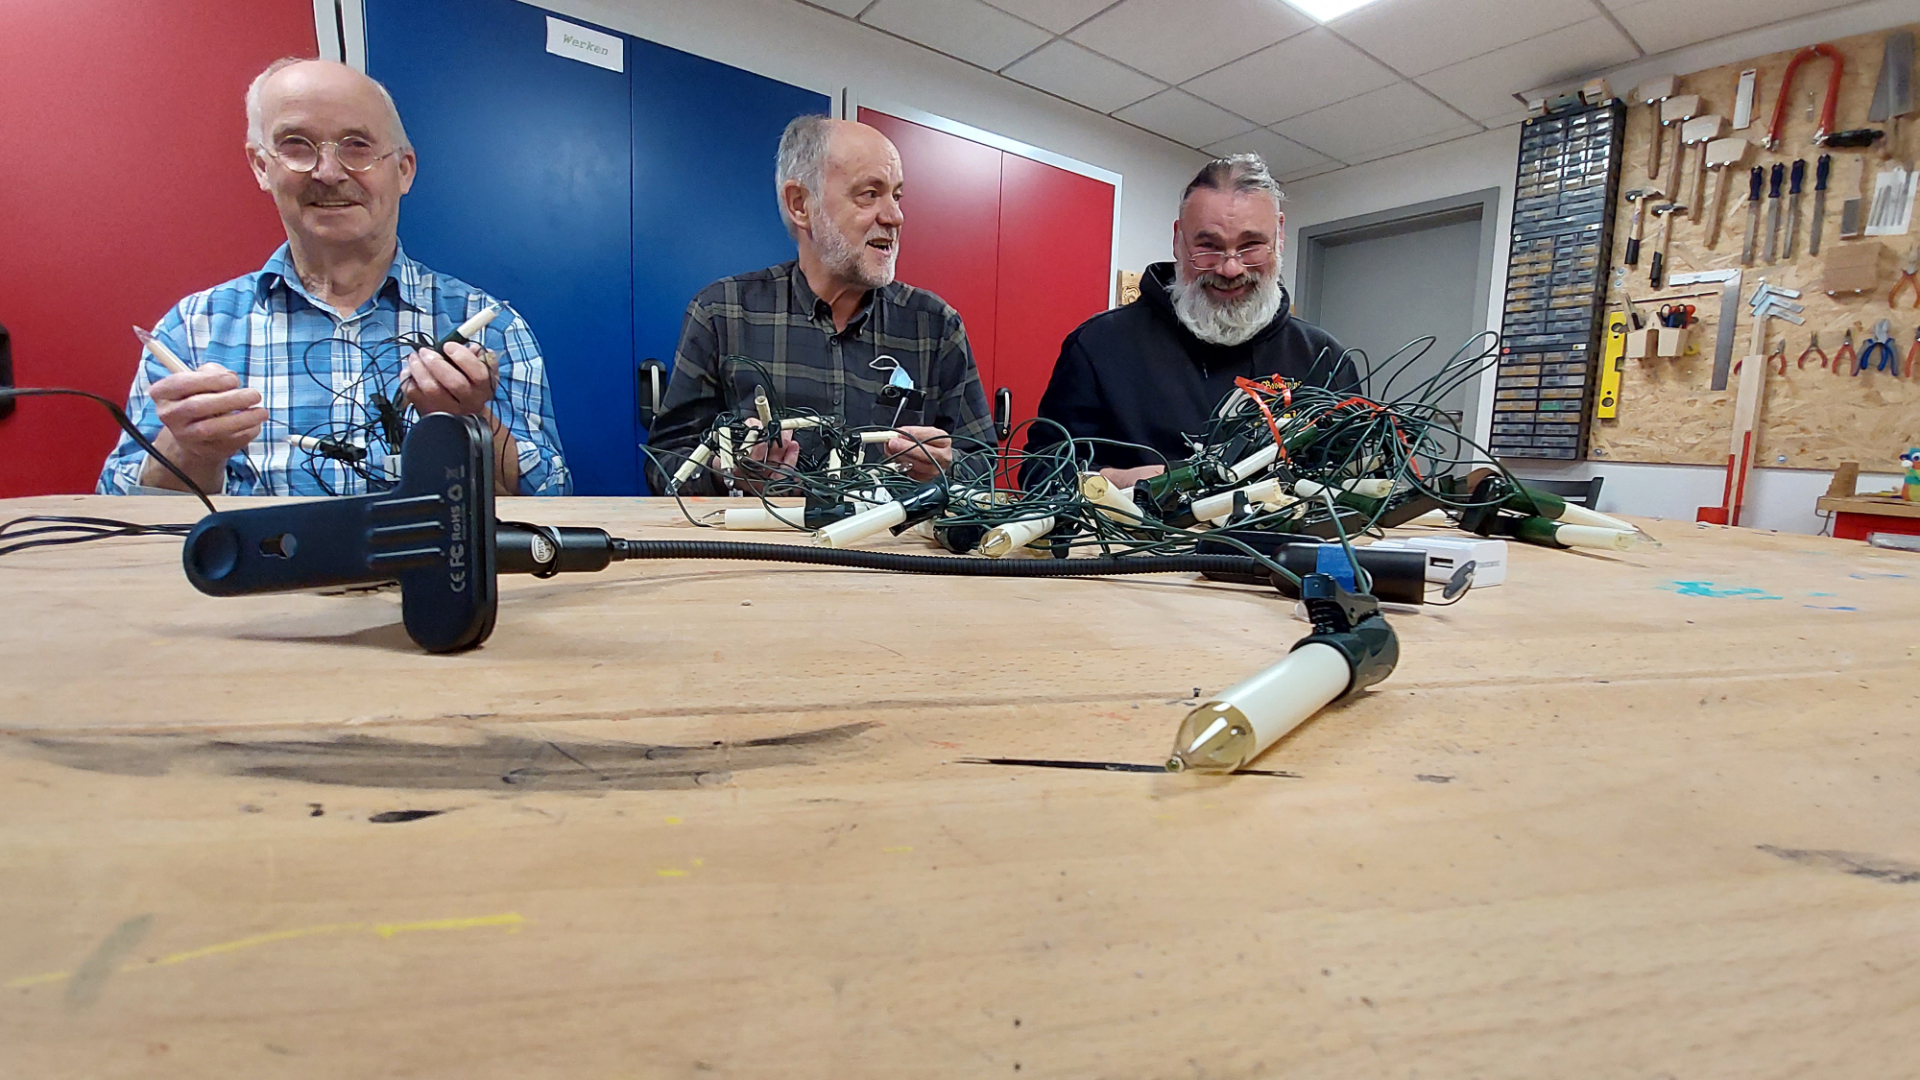 Drei Mitglieder des Orga-Teams testen Lichterketten, die für die Aktion auf LED umgerüstet werden..